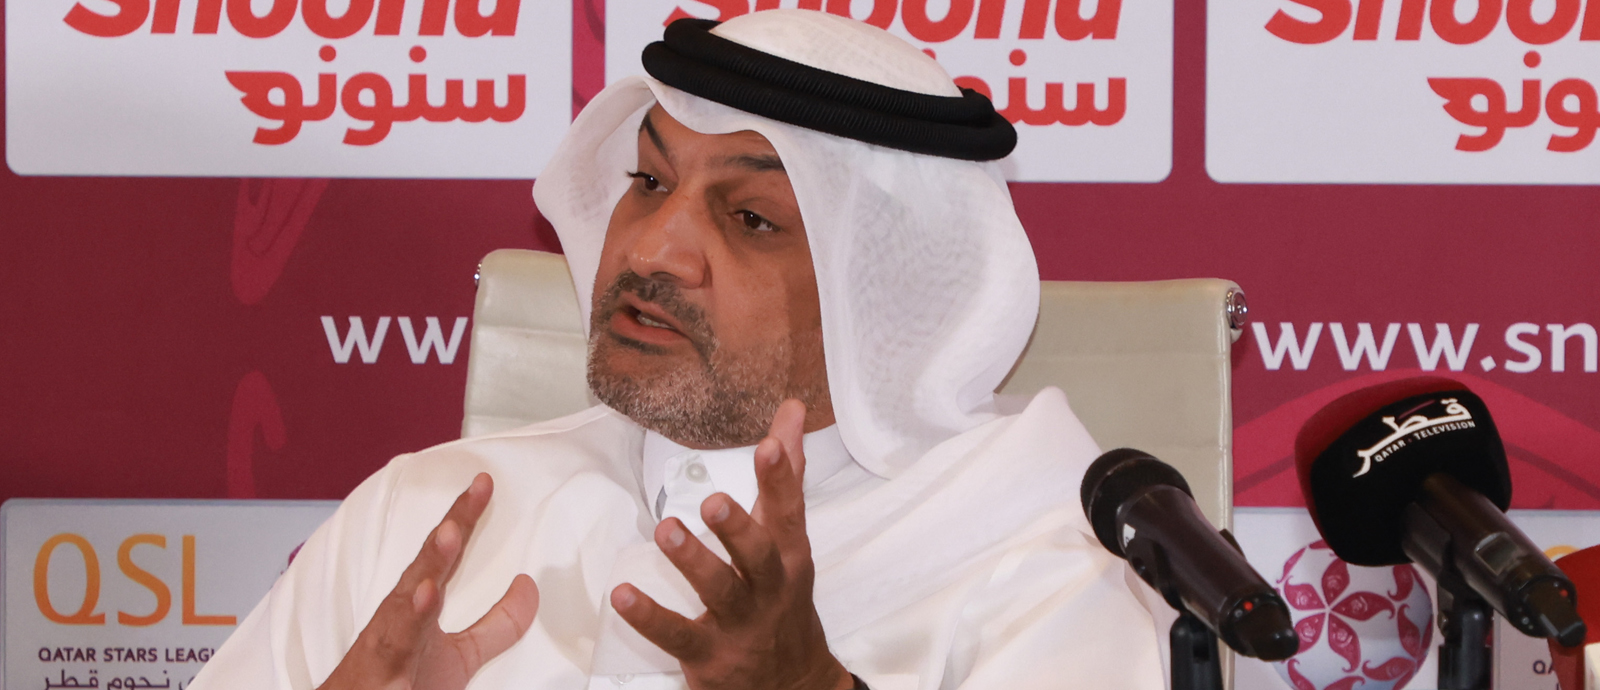 السيد هاني طالب بلان الرئيس التنفيذي لمؤسسة دوري نجوم قطر 